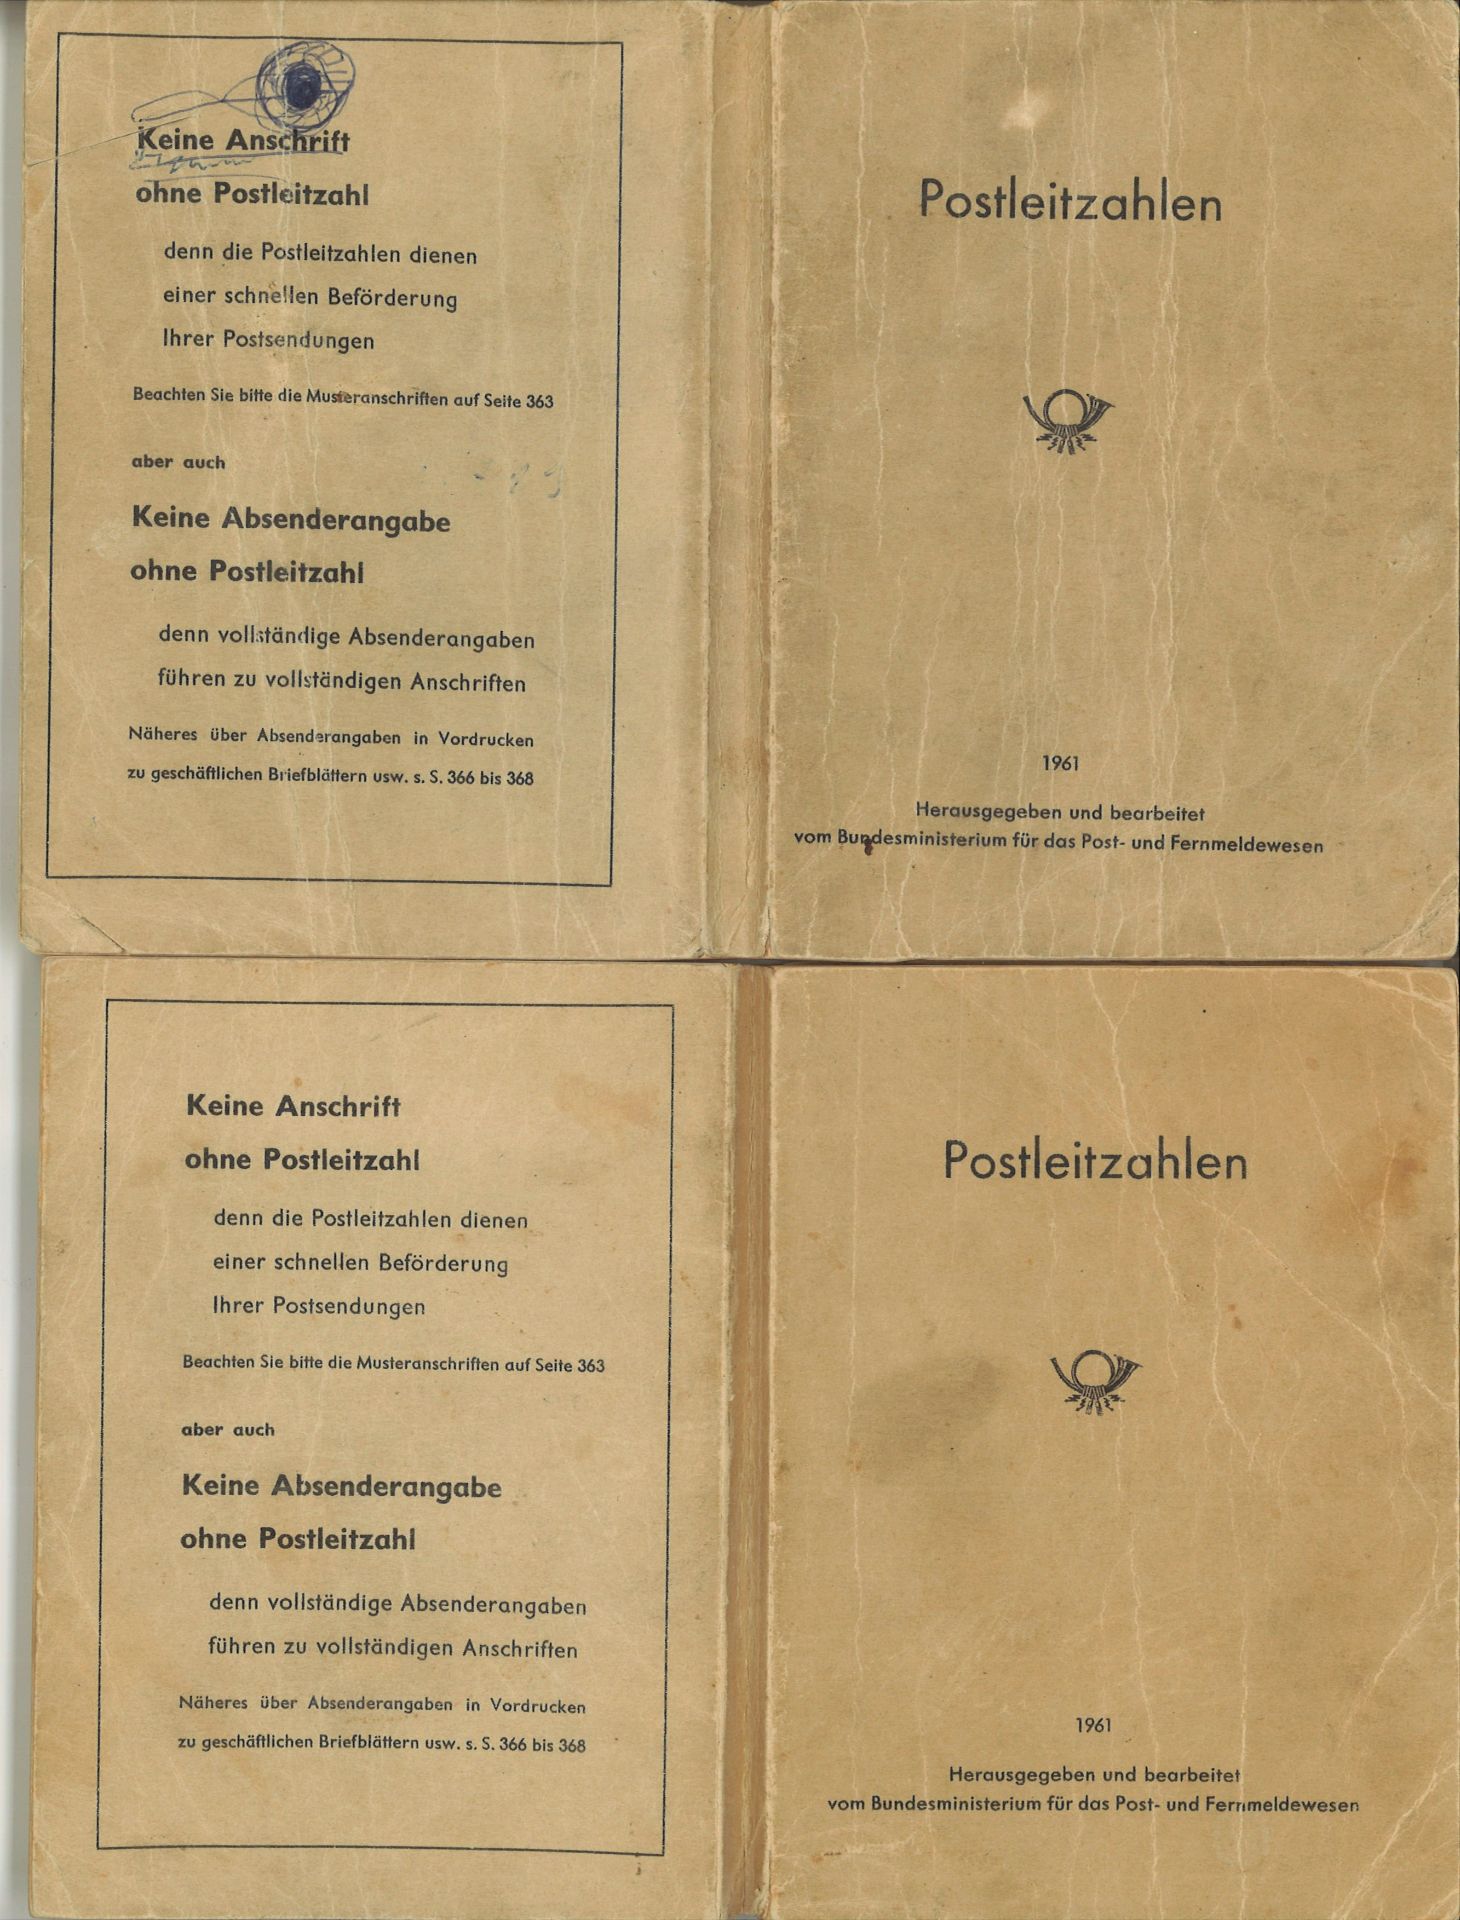 2 Postleitzahlen Bücher von 1961. Herausgegeben und bearbeitet vom Bundesministerium für das Post-